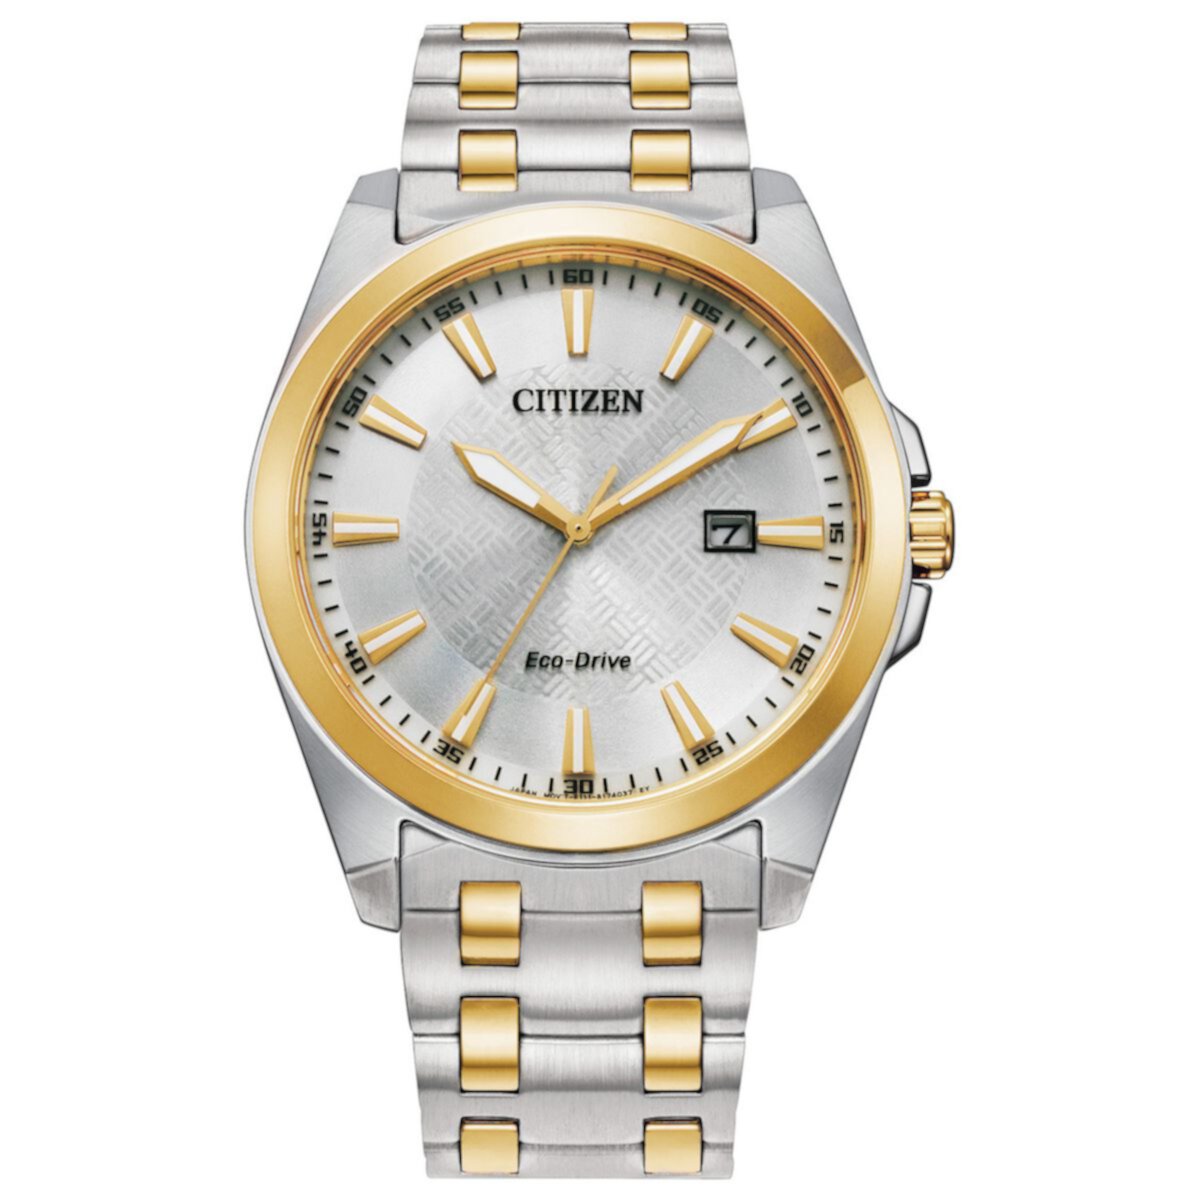 Мужские часы Citizen Eco-Drive Corso с двухцветным браслетом из нержавеющей стали - BM7534-59A Citizen